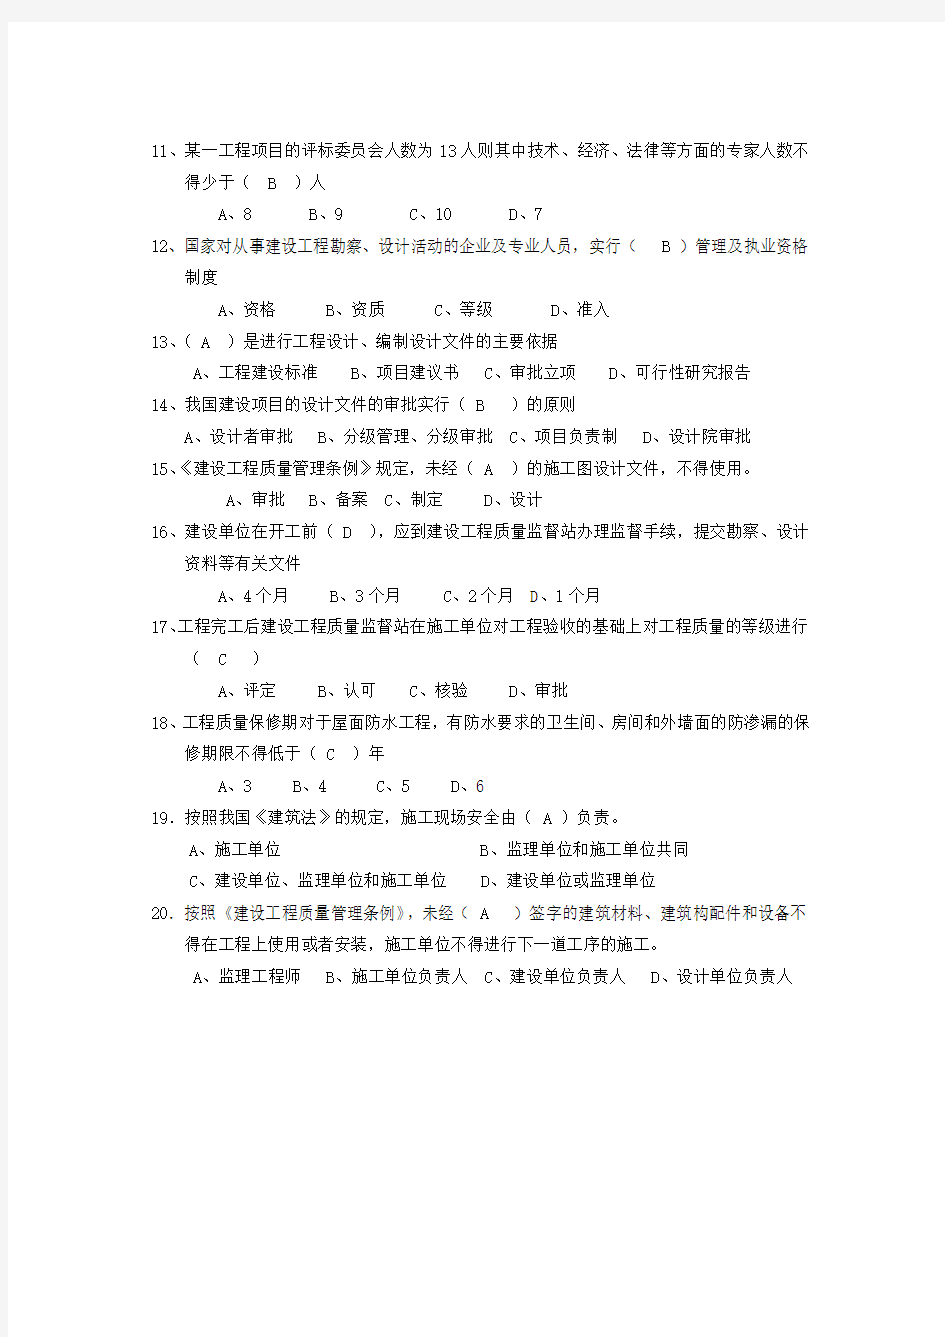 华南理工大学网络教育《建设法规》平时作业